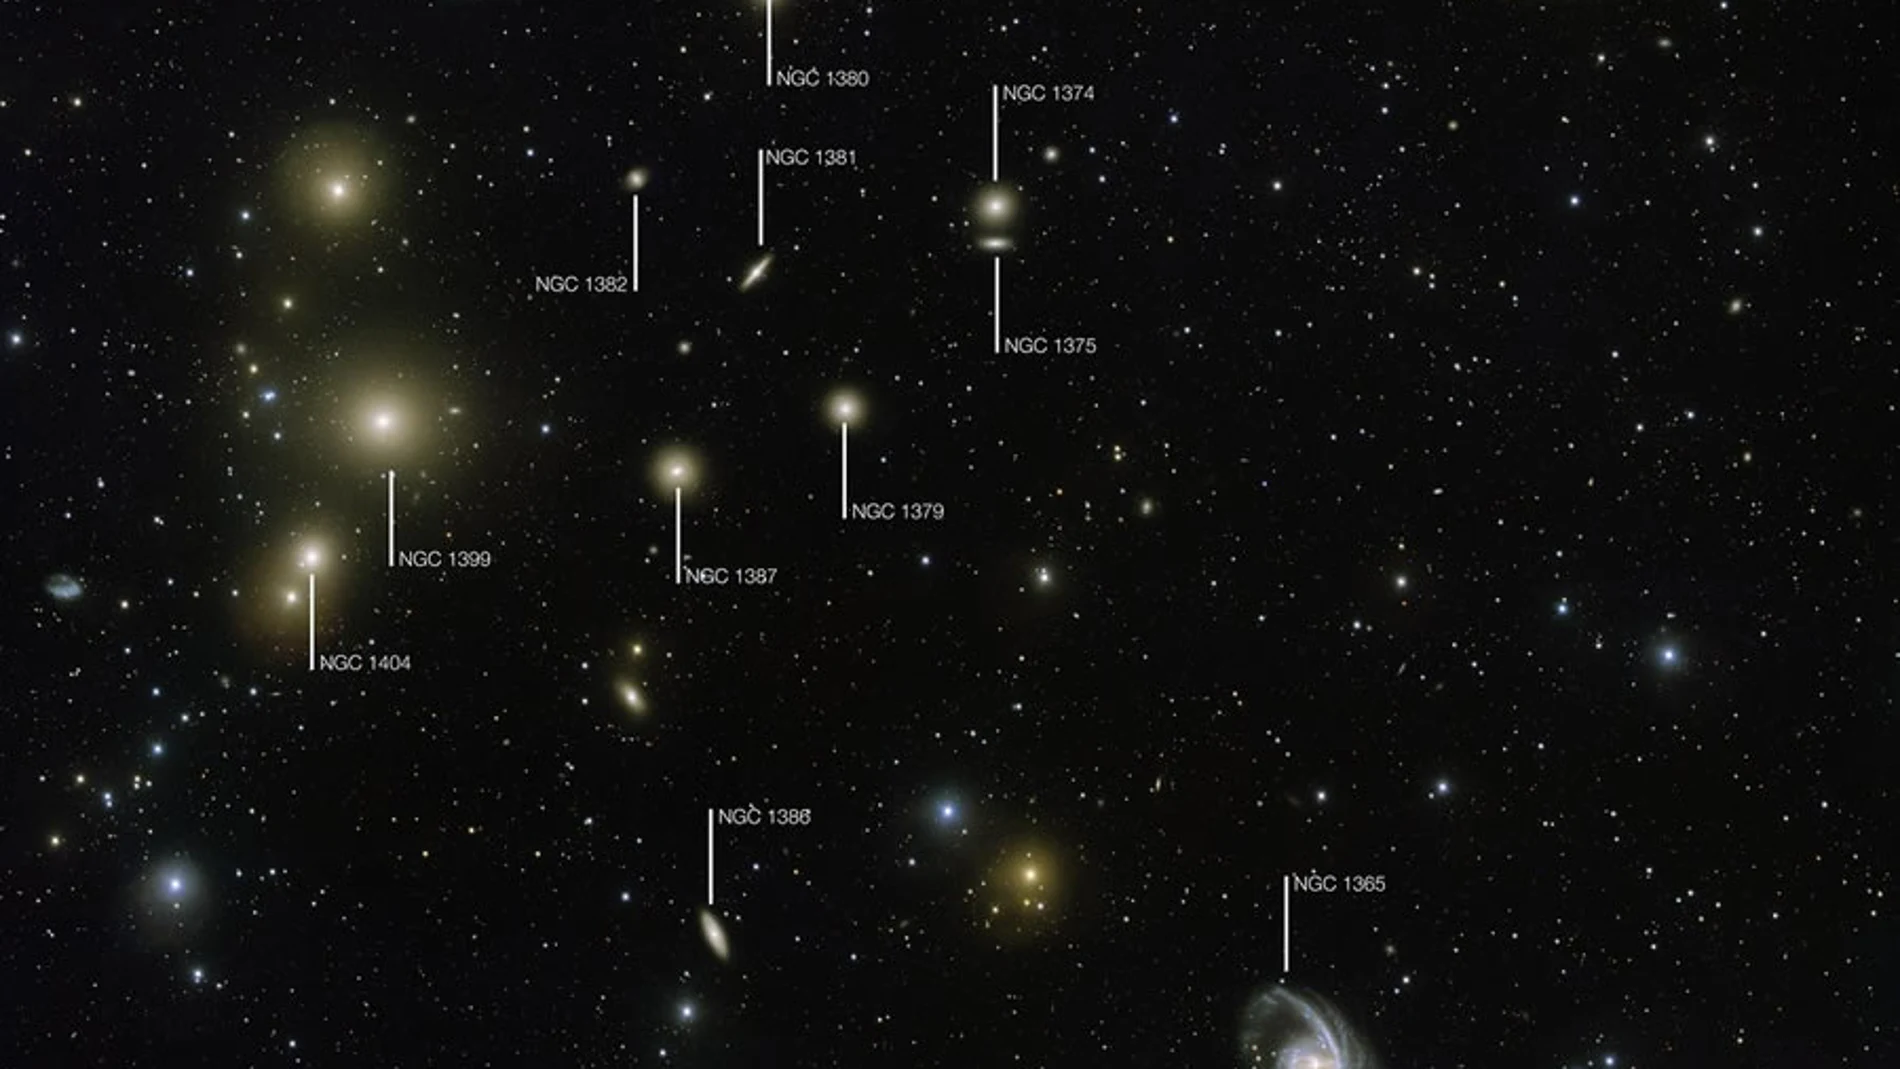 El cúmulo de galaxias de Fornax es uno de los cúmulos de su tipo más cercano a nosotros más allá de nuestro Grupo Local de galaxias. Esta nueva imagen del telescopio de rastreo del VLT muestra la parte central del cúmulo en gran detalle. Las galaxias más brillantes están etiquetadas